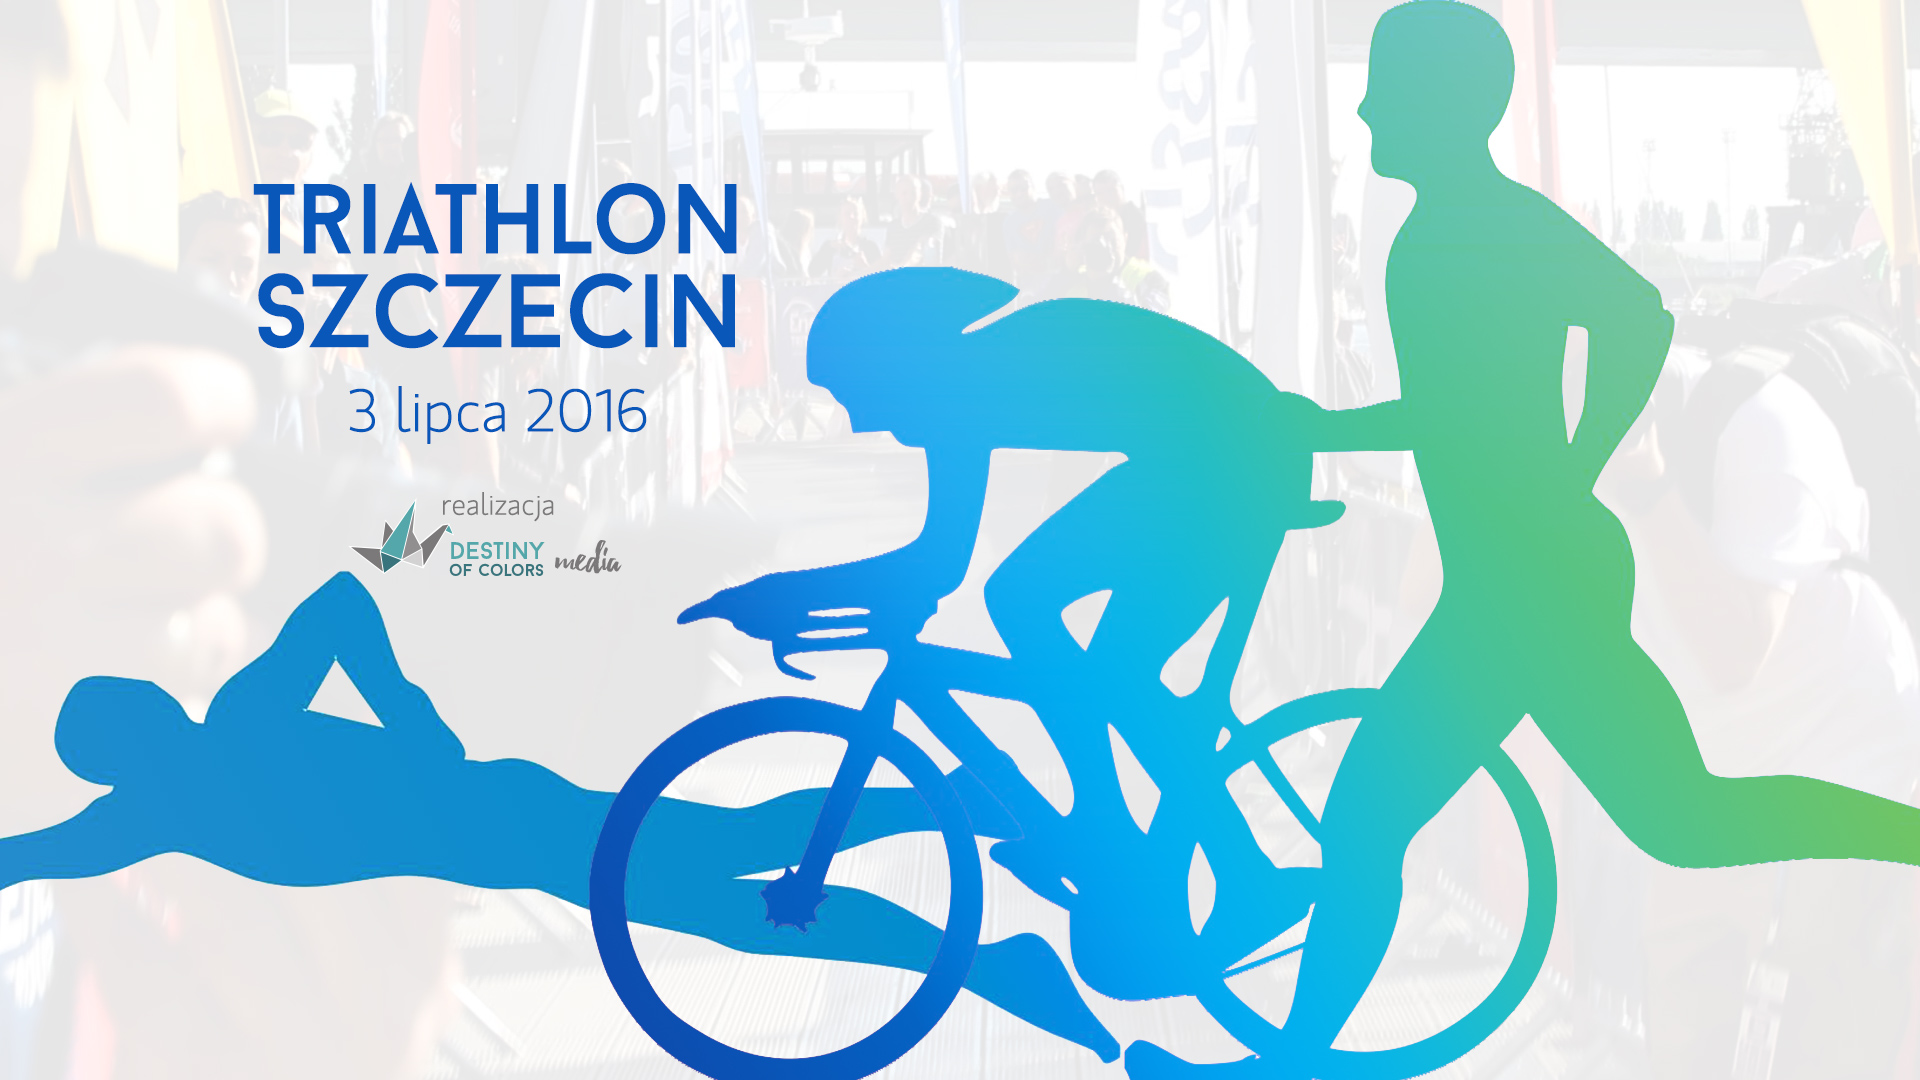 Triathlon Szczecin 2016